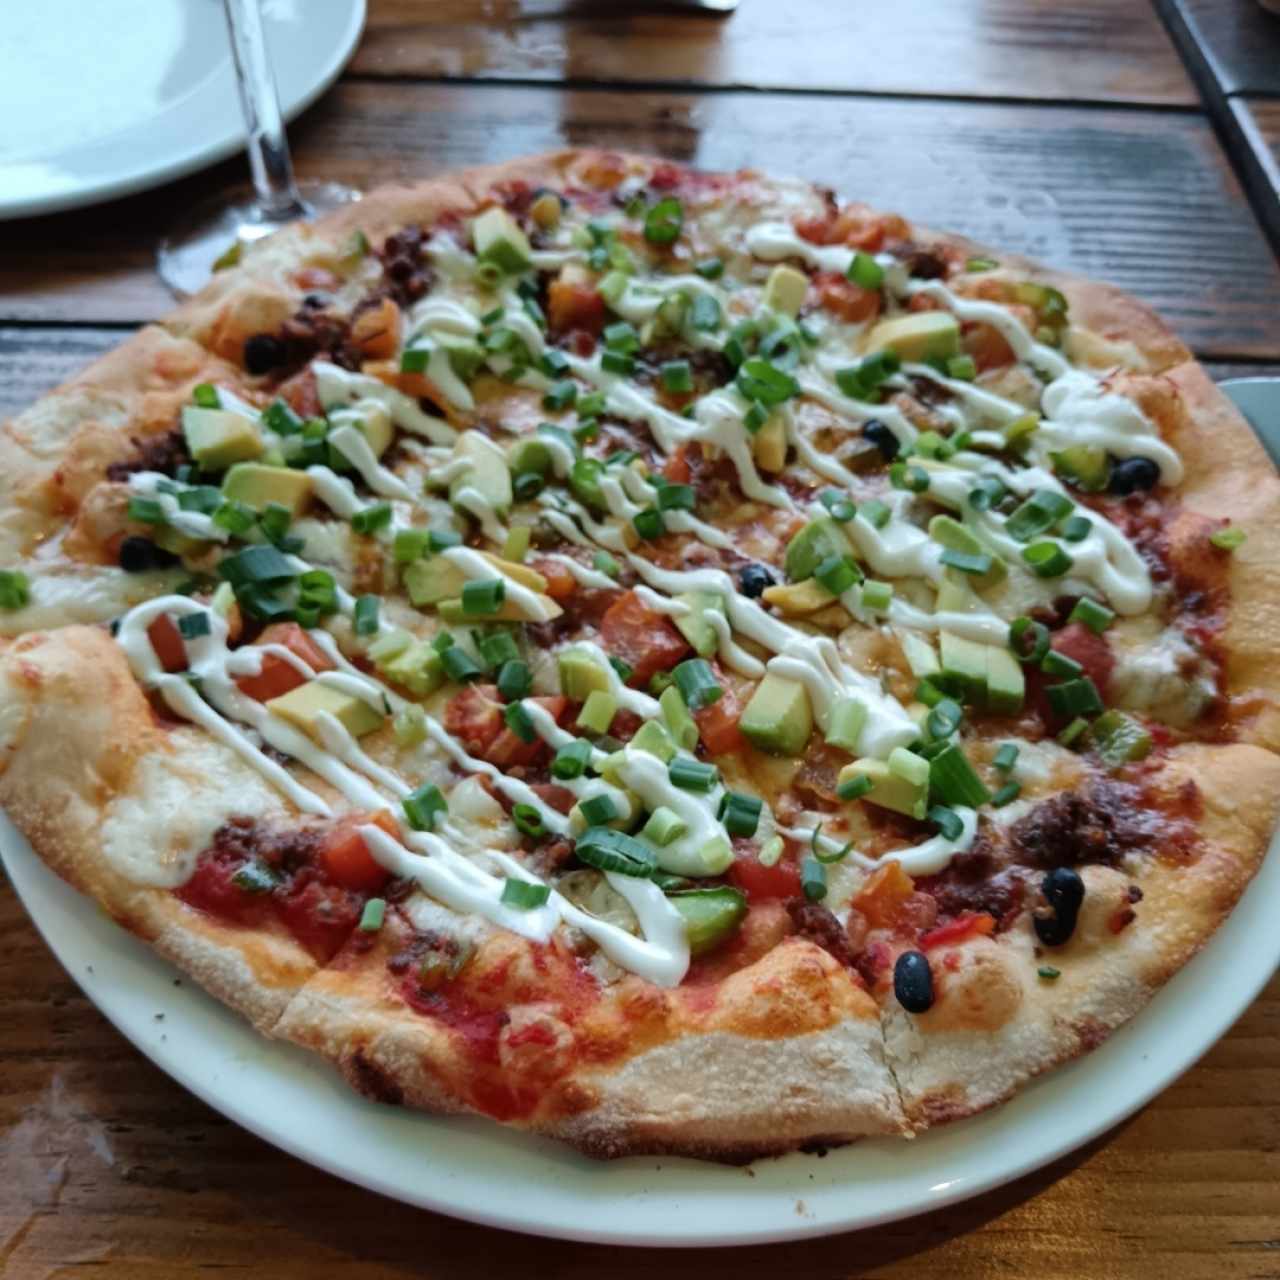 Pizza Mexicana 